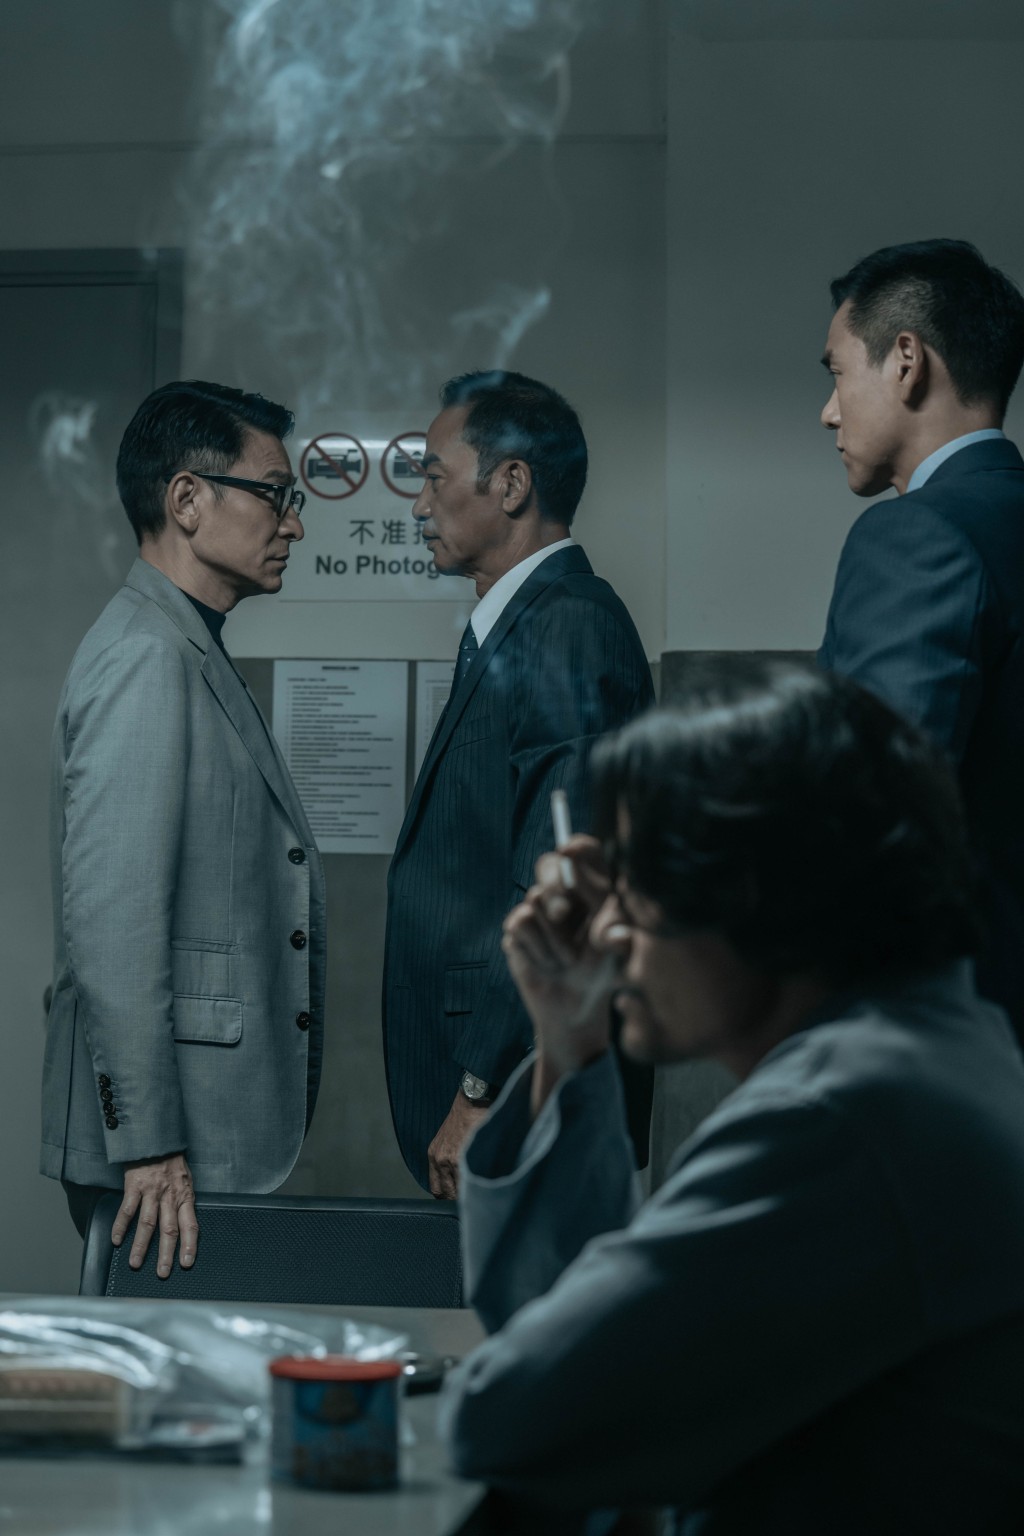 劉德華、林家棟、劉雅瑟等主演犯罪動作電影《潛行》將於1月11日上映。